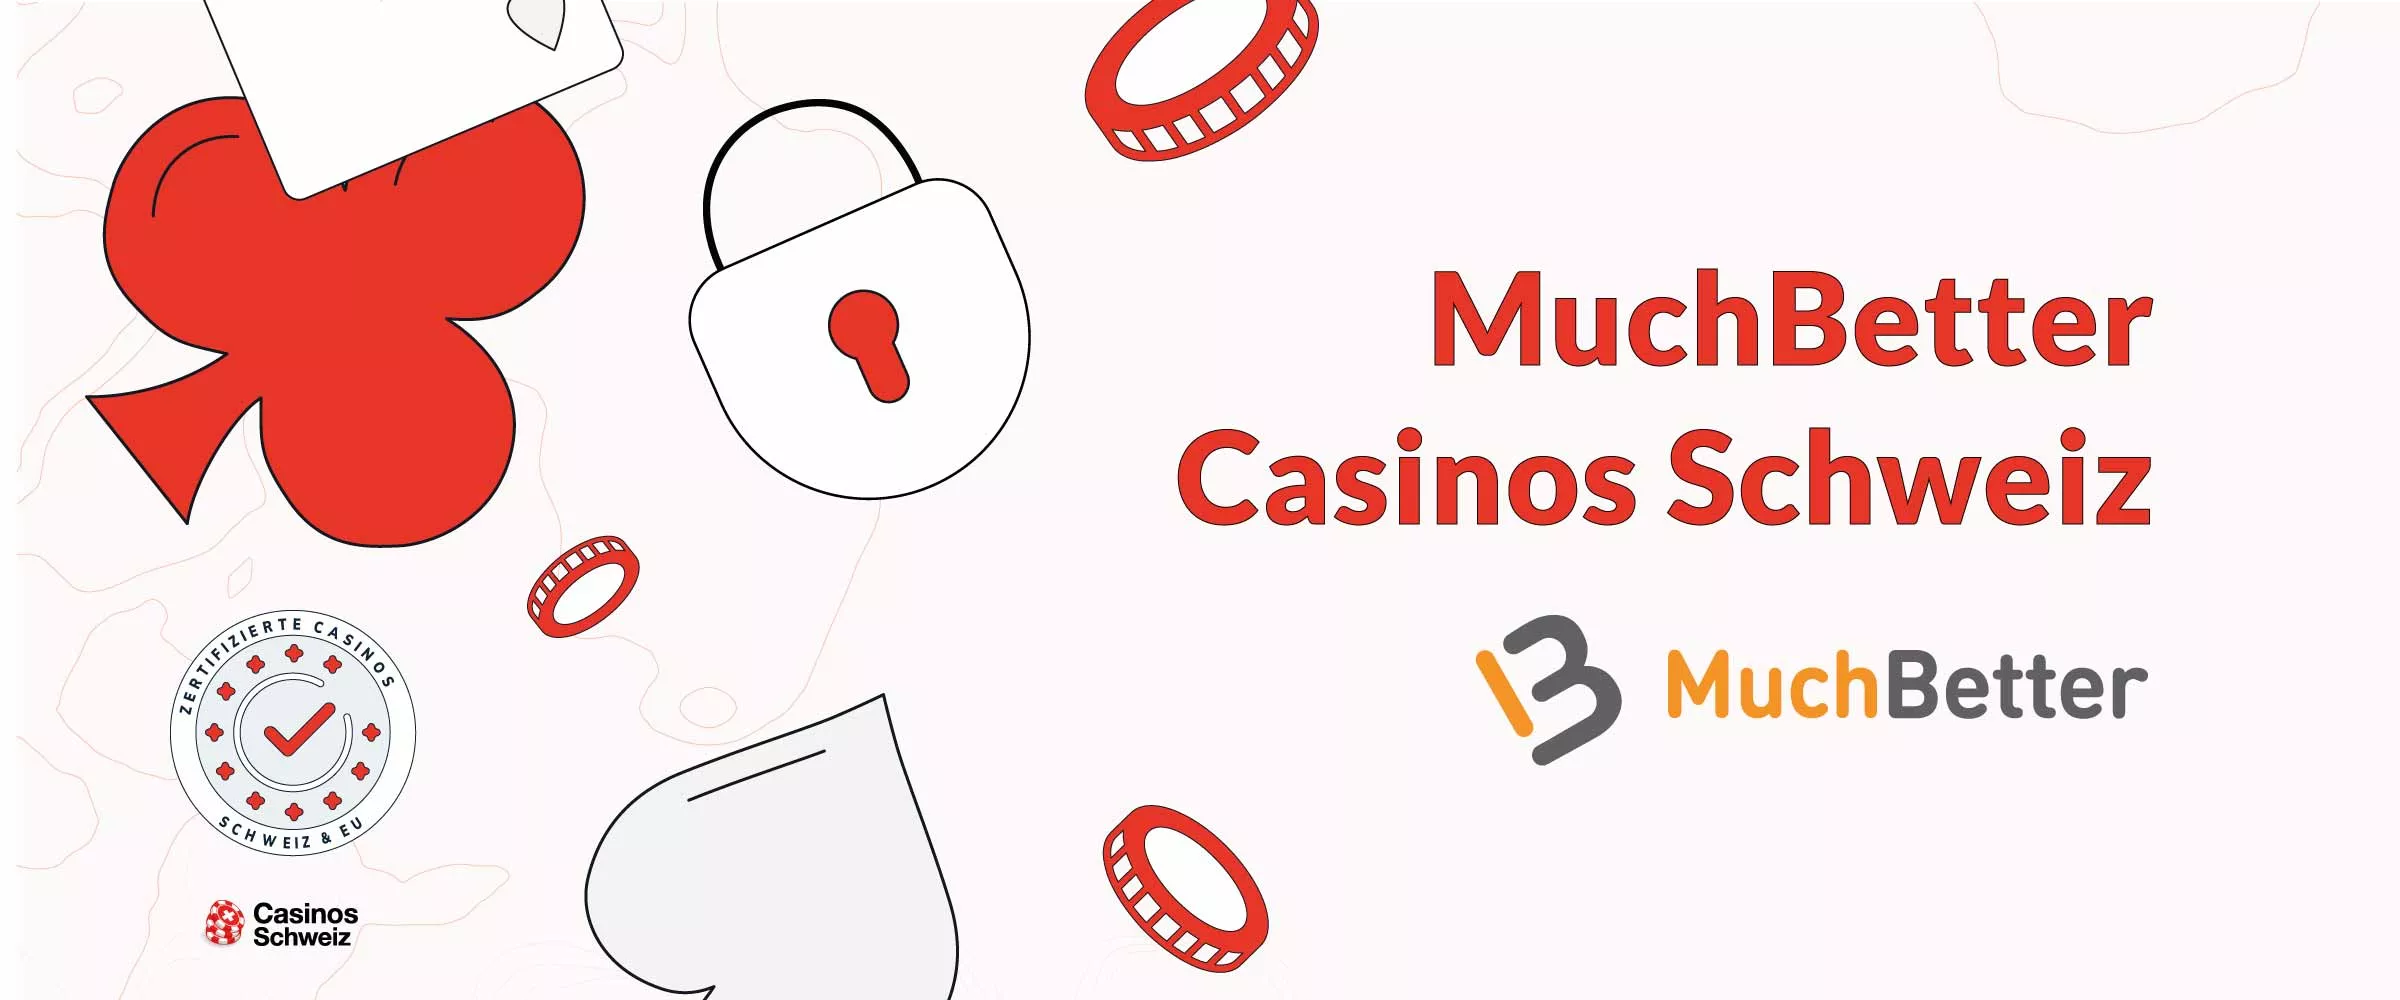 MuchBetter Casinos Schweiz